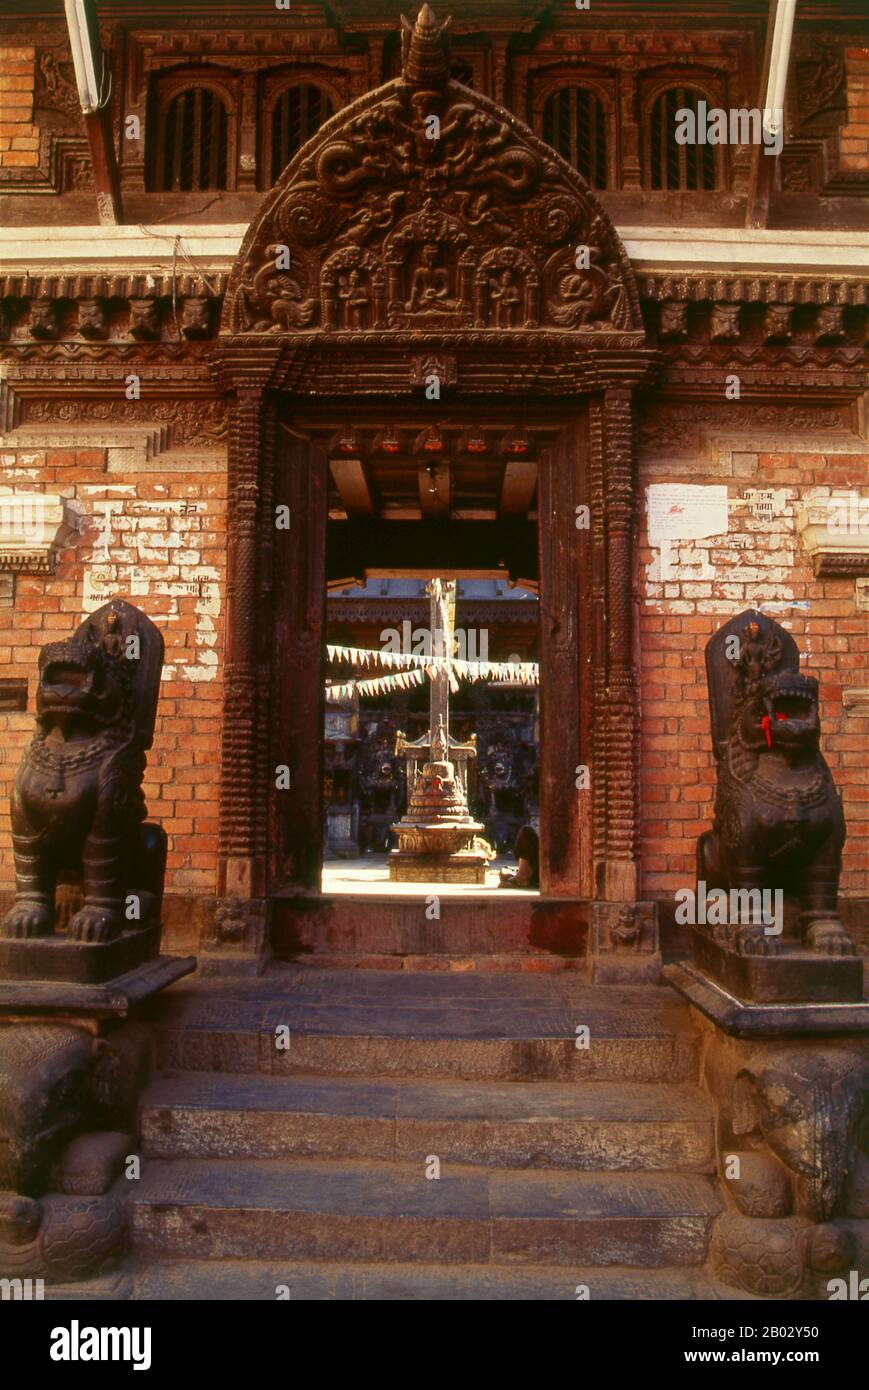 Rudravarna Mahavihara, oder Oku Bahal, wurde Mitte des 17. Jahrhunderts erbaut. Der Tempel befindet sich um einen Innenhof, der mit Chaitya- und Metallfiguren aller Art und Größen überströmt ist. Es gibt massive Garudas, Elefanten, Pfauen, Figuren betender Anbeter und eine Statue von Juddha Shamsher Rana, die dem Tempel nach dem Erdbeben von 1934 großzügige Wiederherstellungshilfen gewährt haben. In den Ecken des mit Öllampengeländern gesäumten Innenhofes befinden sich Bronzefiguren des boshaften affengottes Hanuman, die ihm beim Verzehr eines Kürbisses, einer Banane und etwas zeigen, das wie ein aussieht Stockfoto